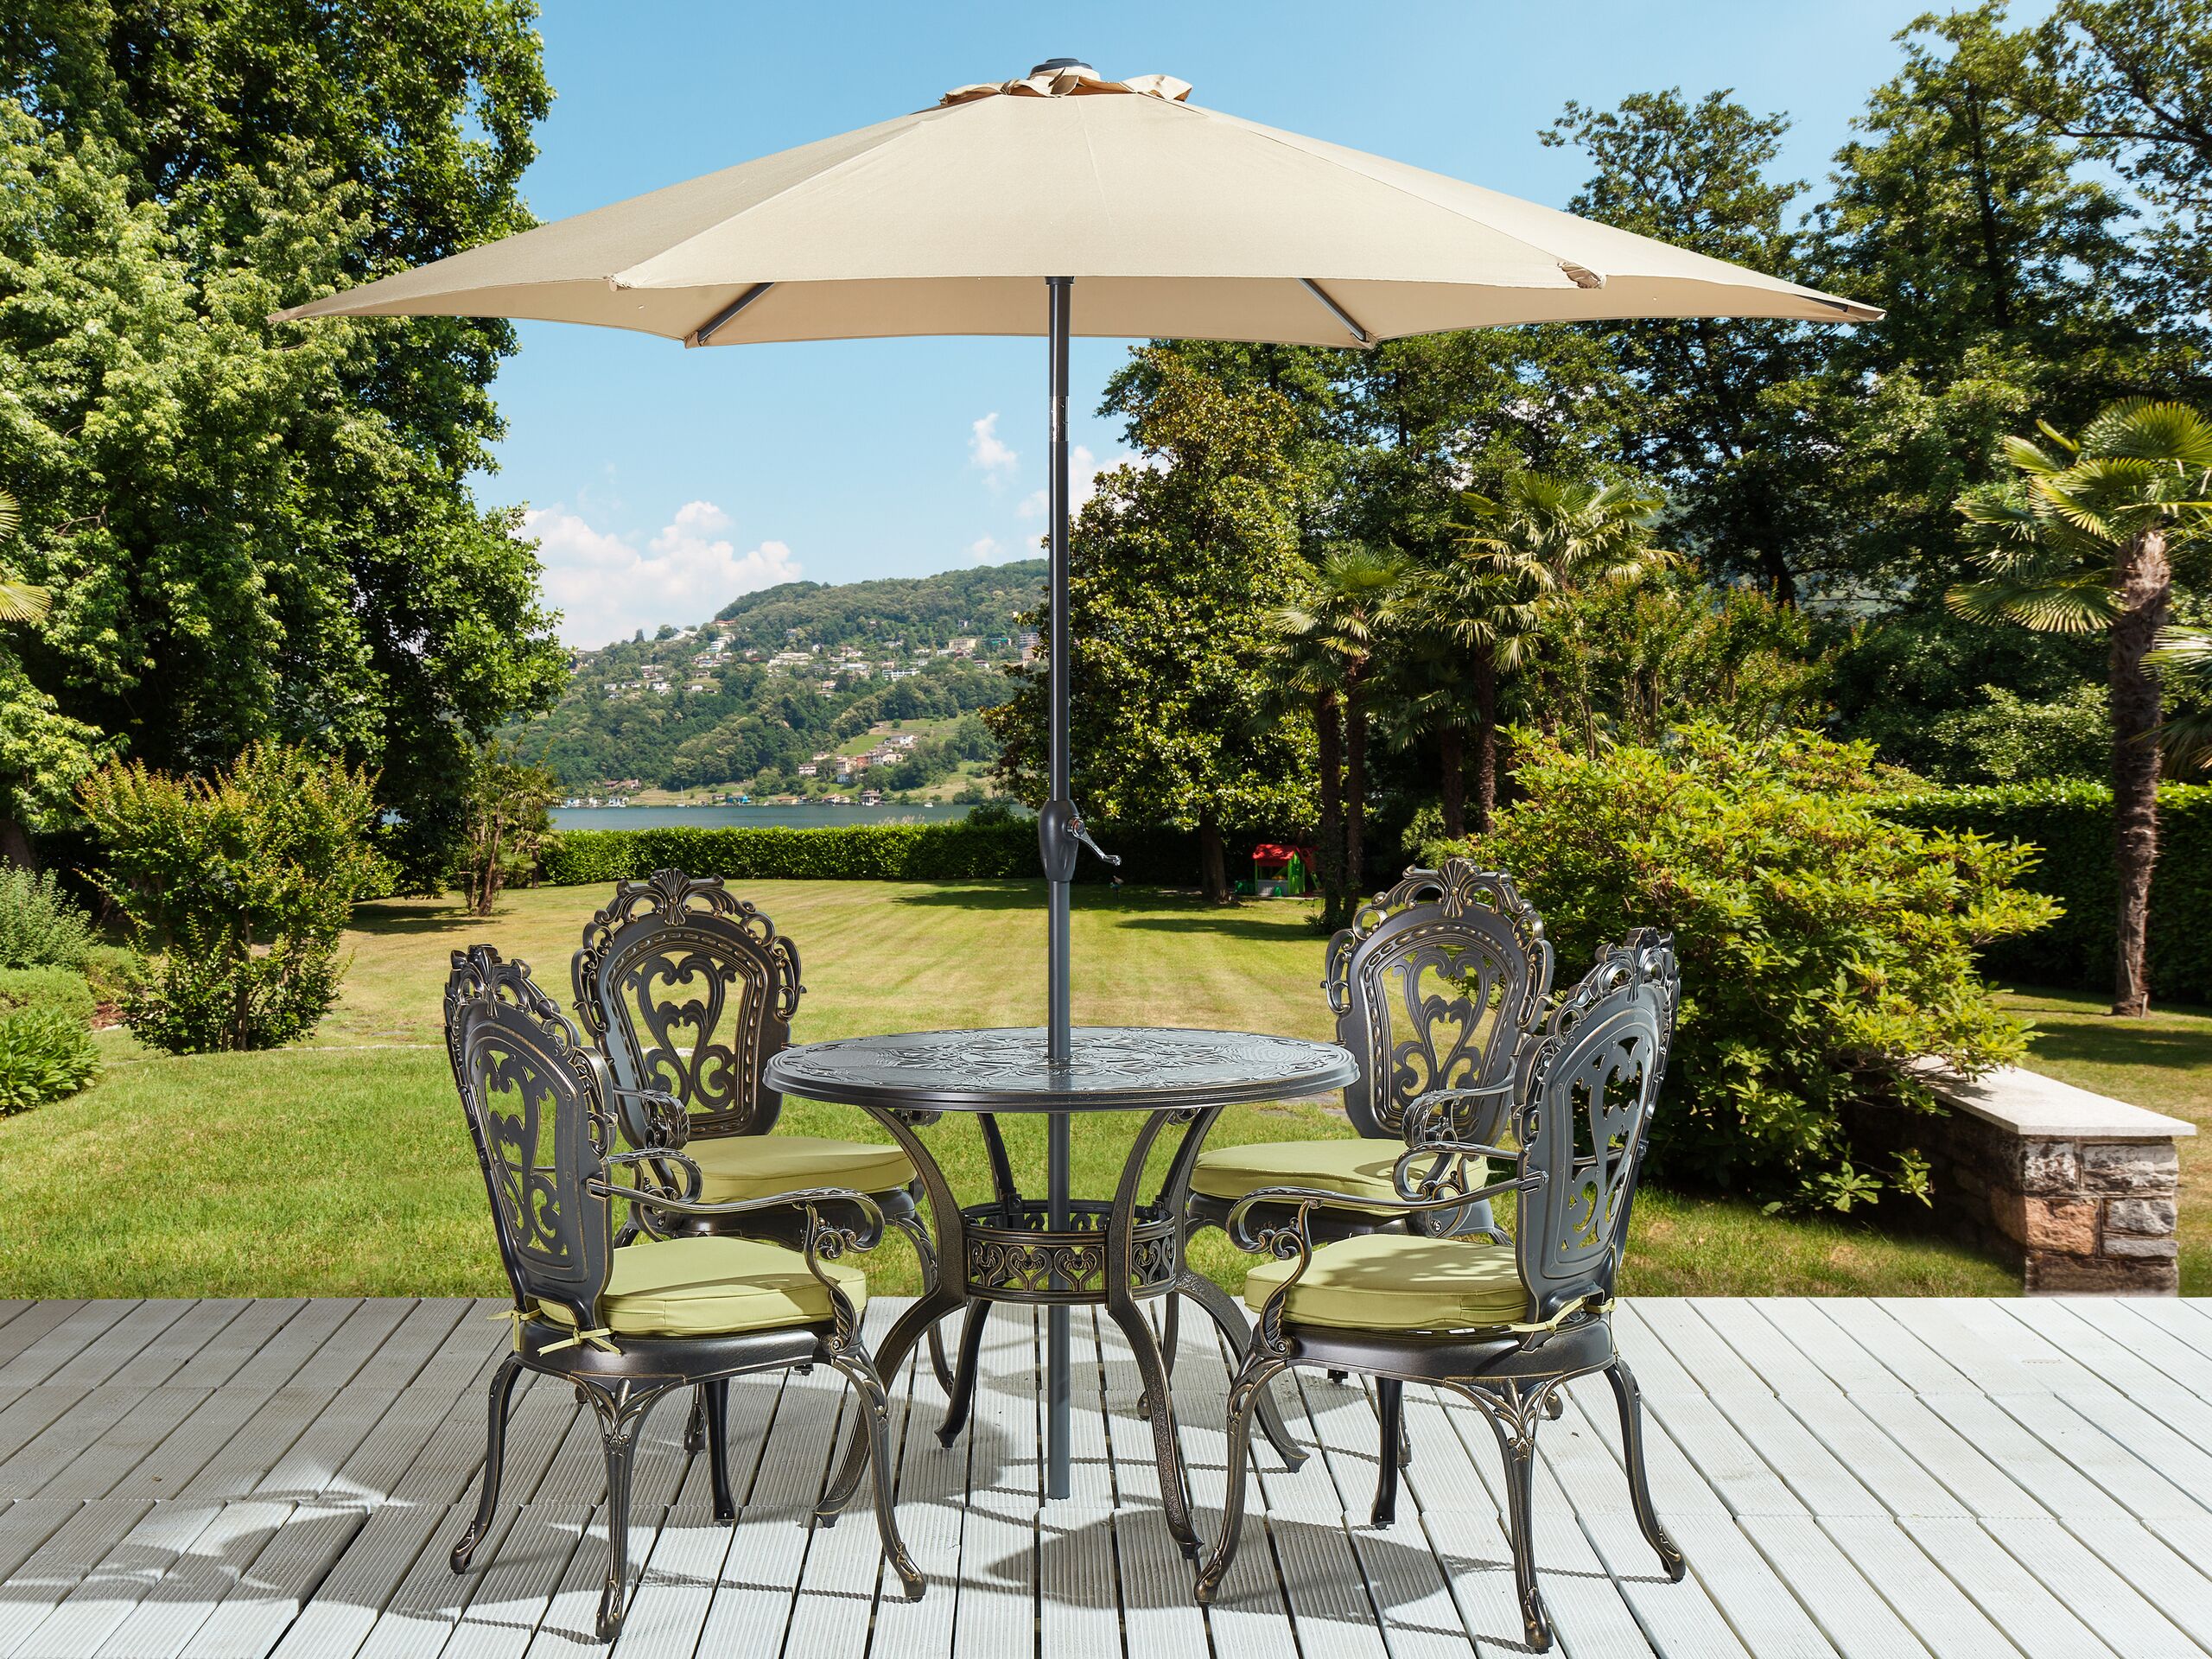 Conjunto de jardim em alumínio castanho com 1 mesa redonda 4 cadeiras e guarda-sol estilo vintage